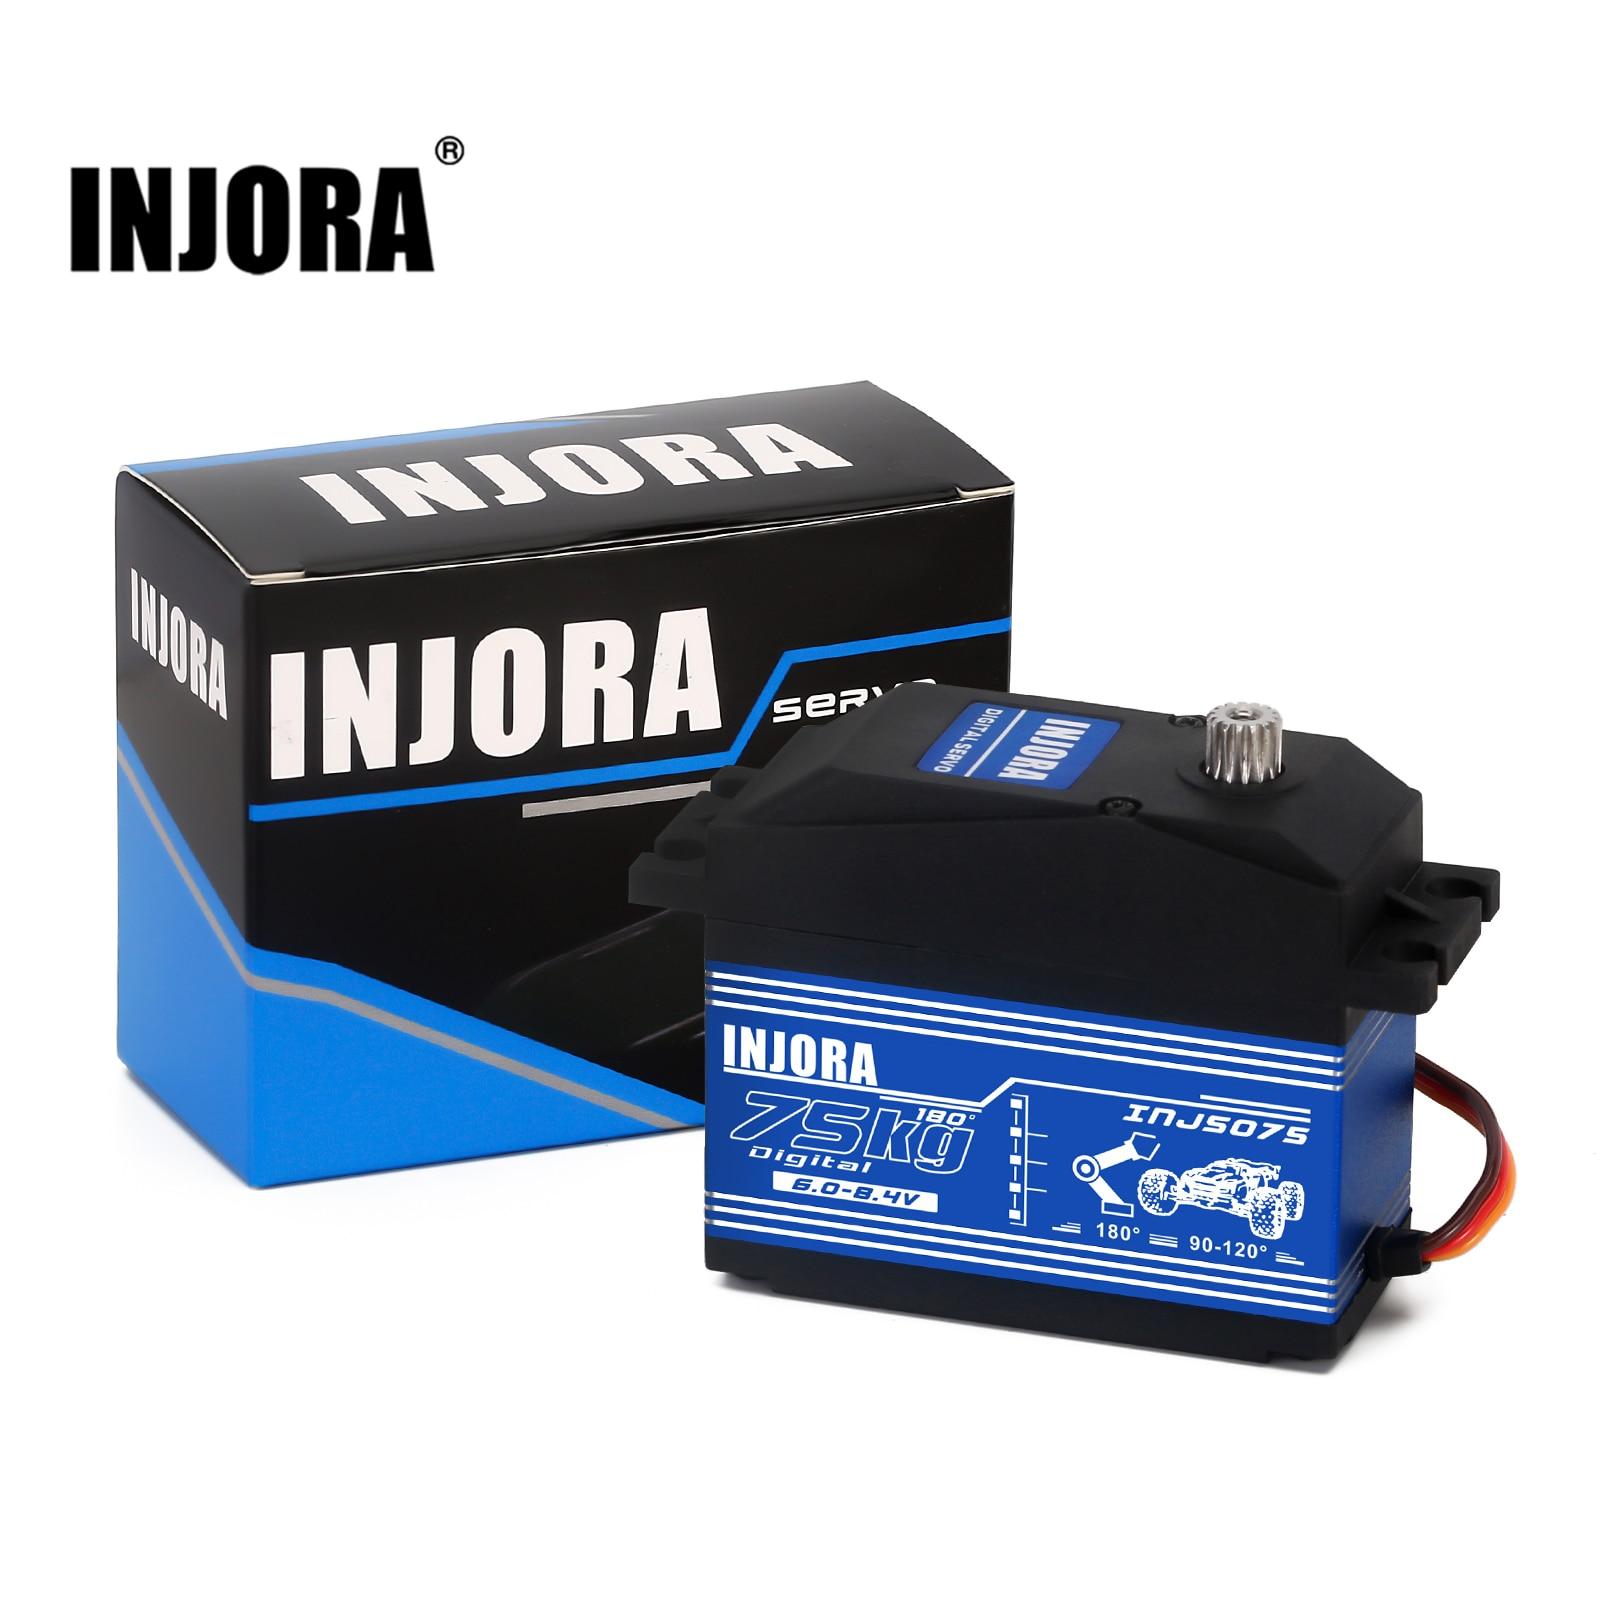 INJORA-High-Voltage-INJS075-75KG-High-Voltage-Super-Torque-Digital-Servo-with-15T-Metal-Arm-for.jpg